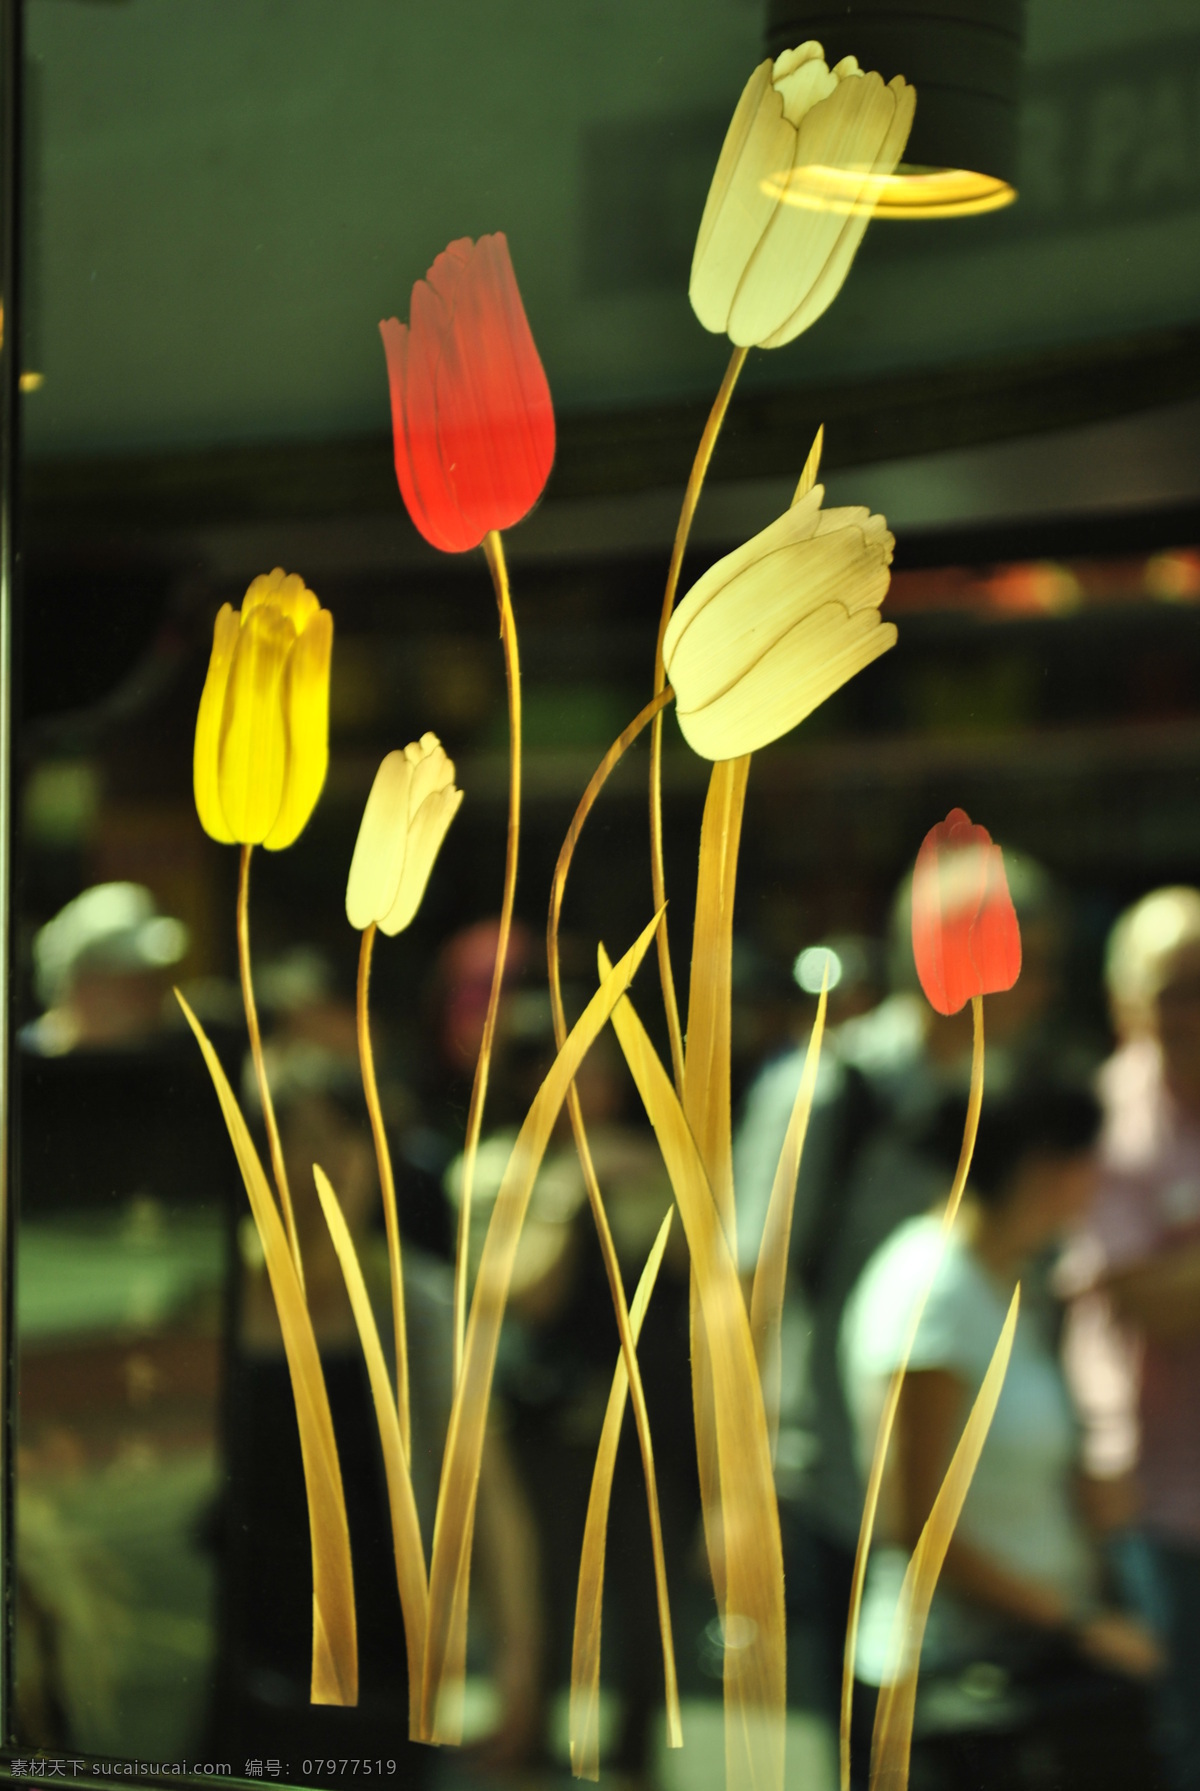 意境美 艺术 花朵 模糊人群 灯光 玻璃 传统文化 文化艺术